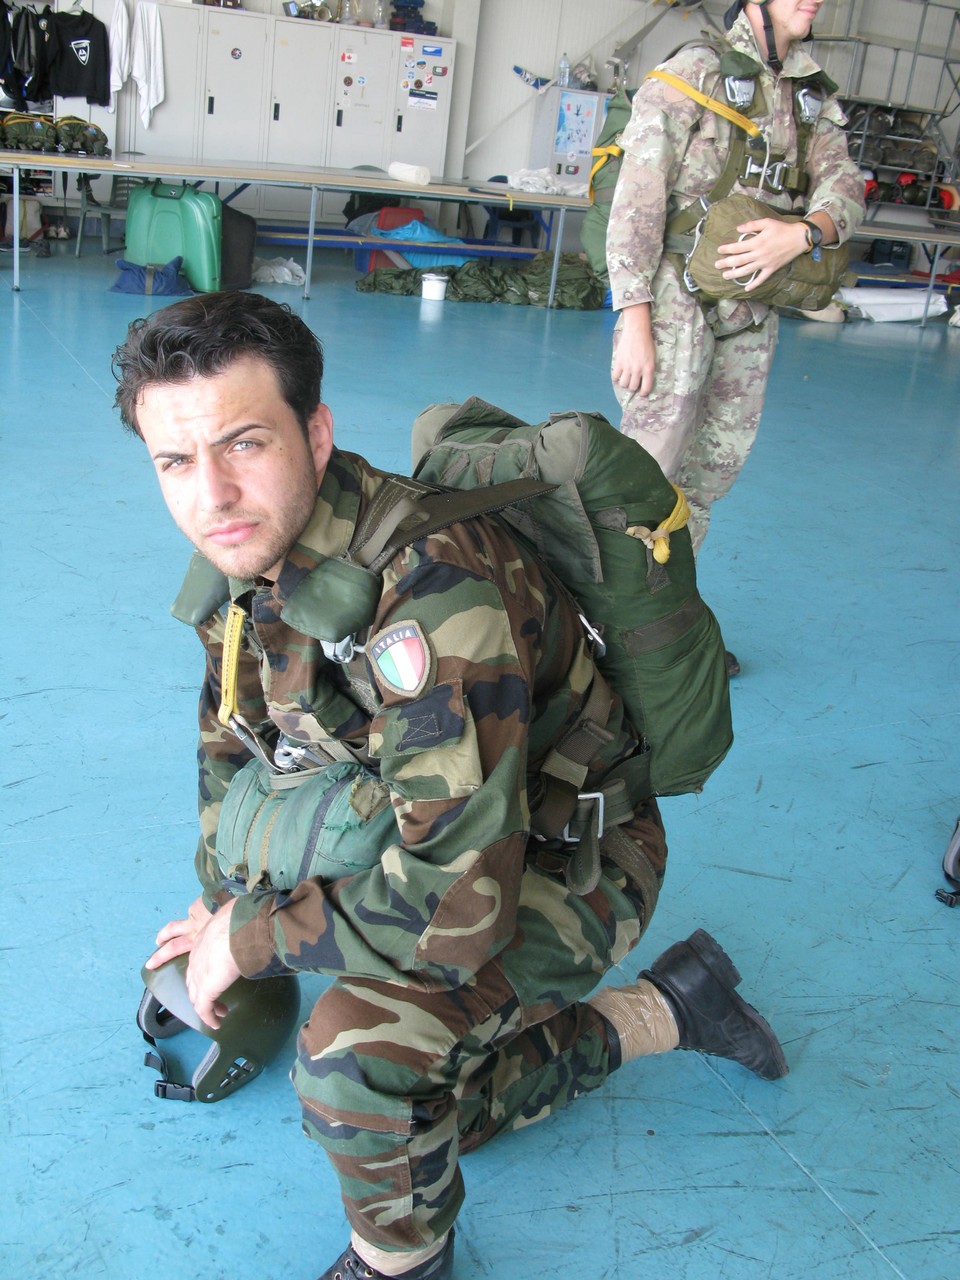 Lanci 2013 Paracadutisti Caserta